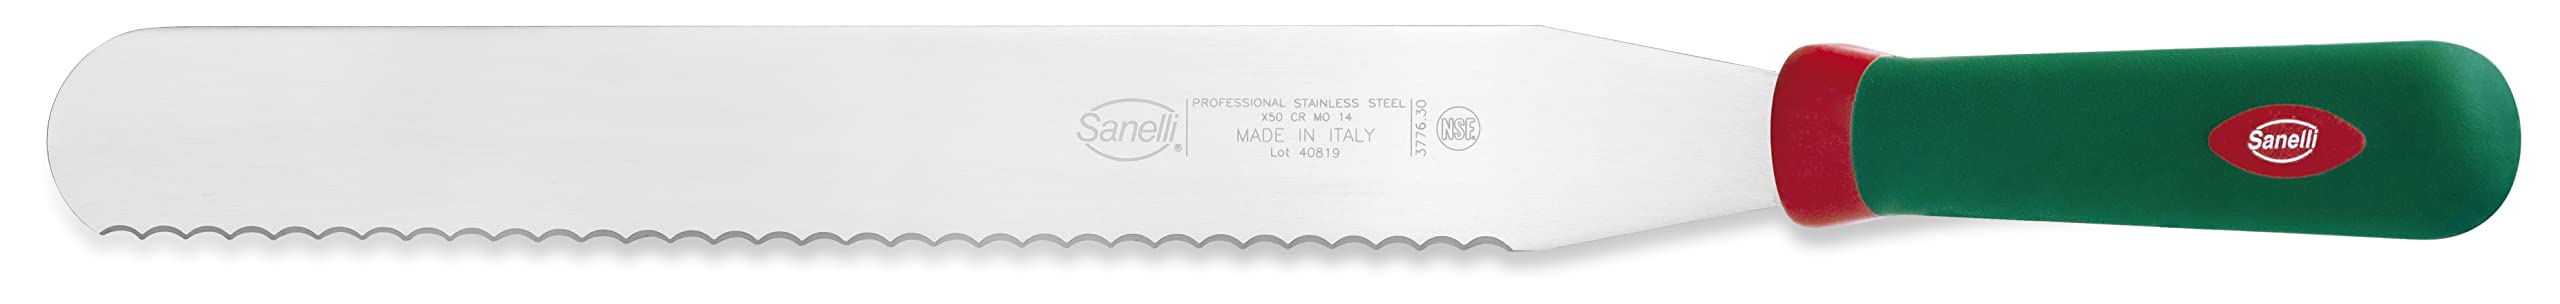 Sanelli Premana Professional Spachtel für Koch und Gebäck, Edelstahl, Klingenlänge 30 cm.